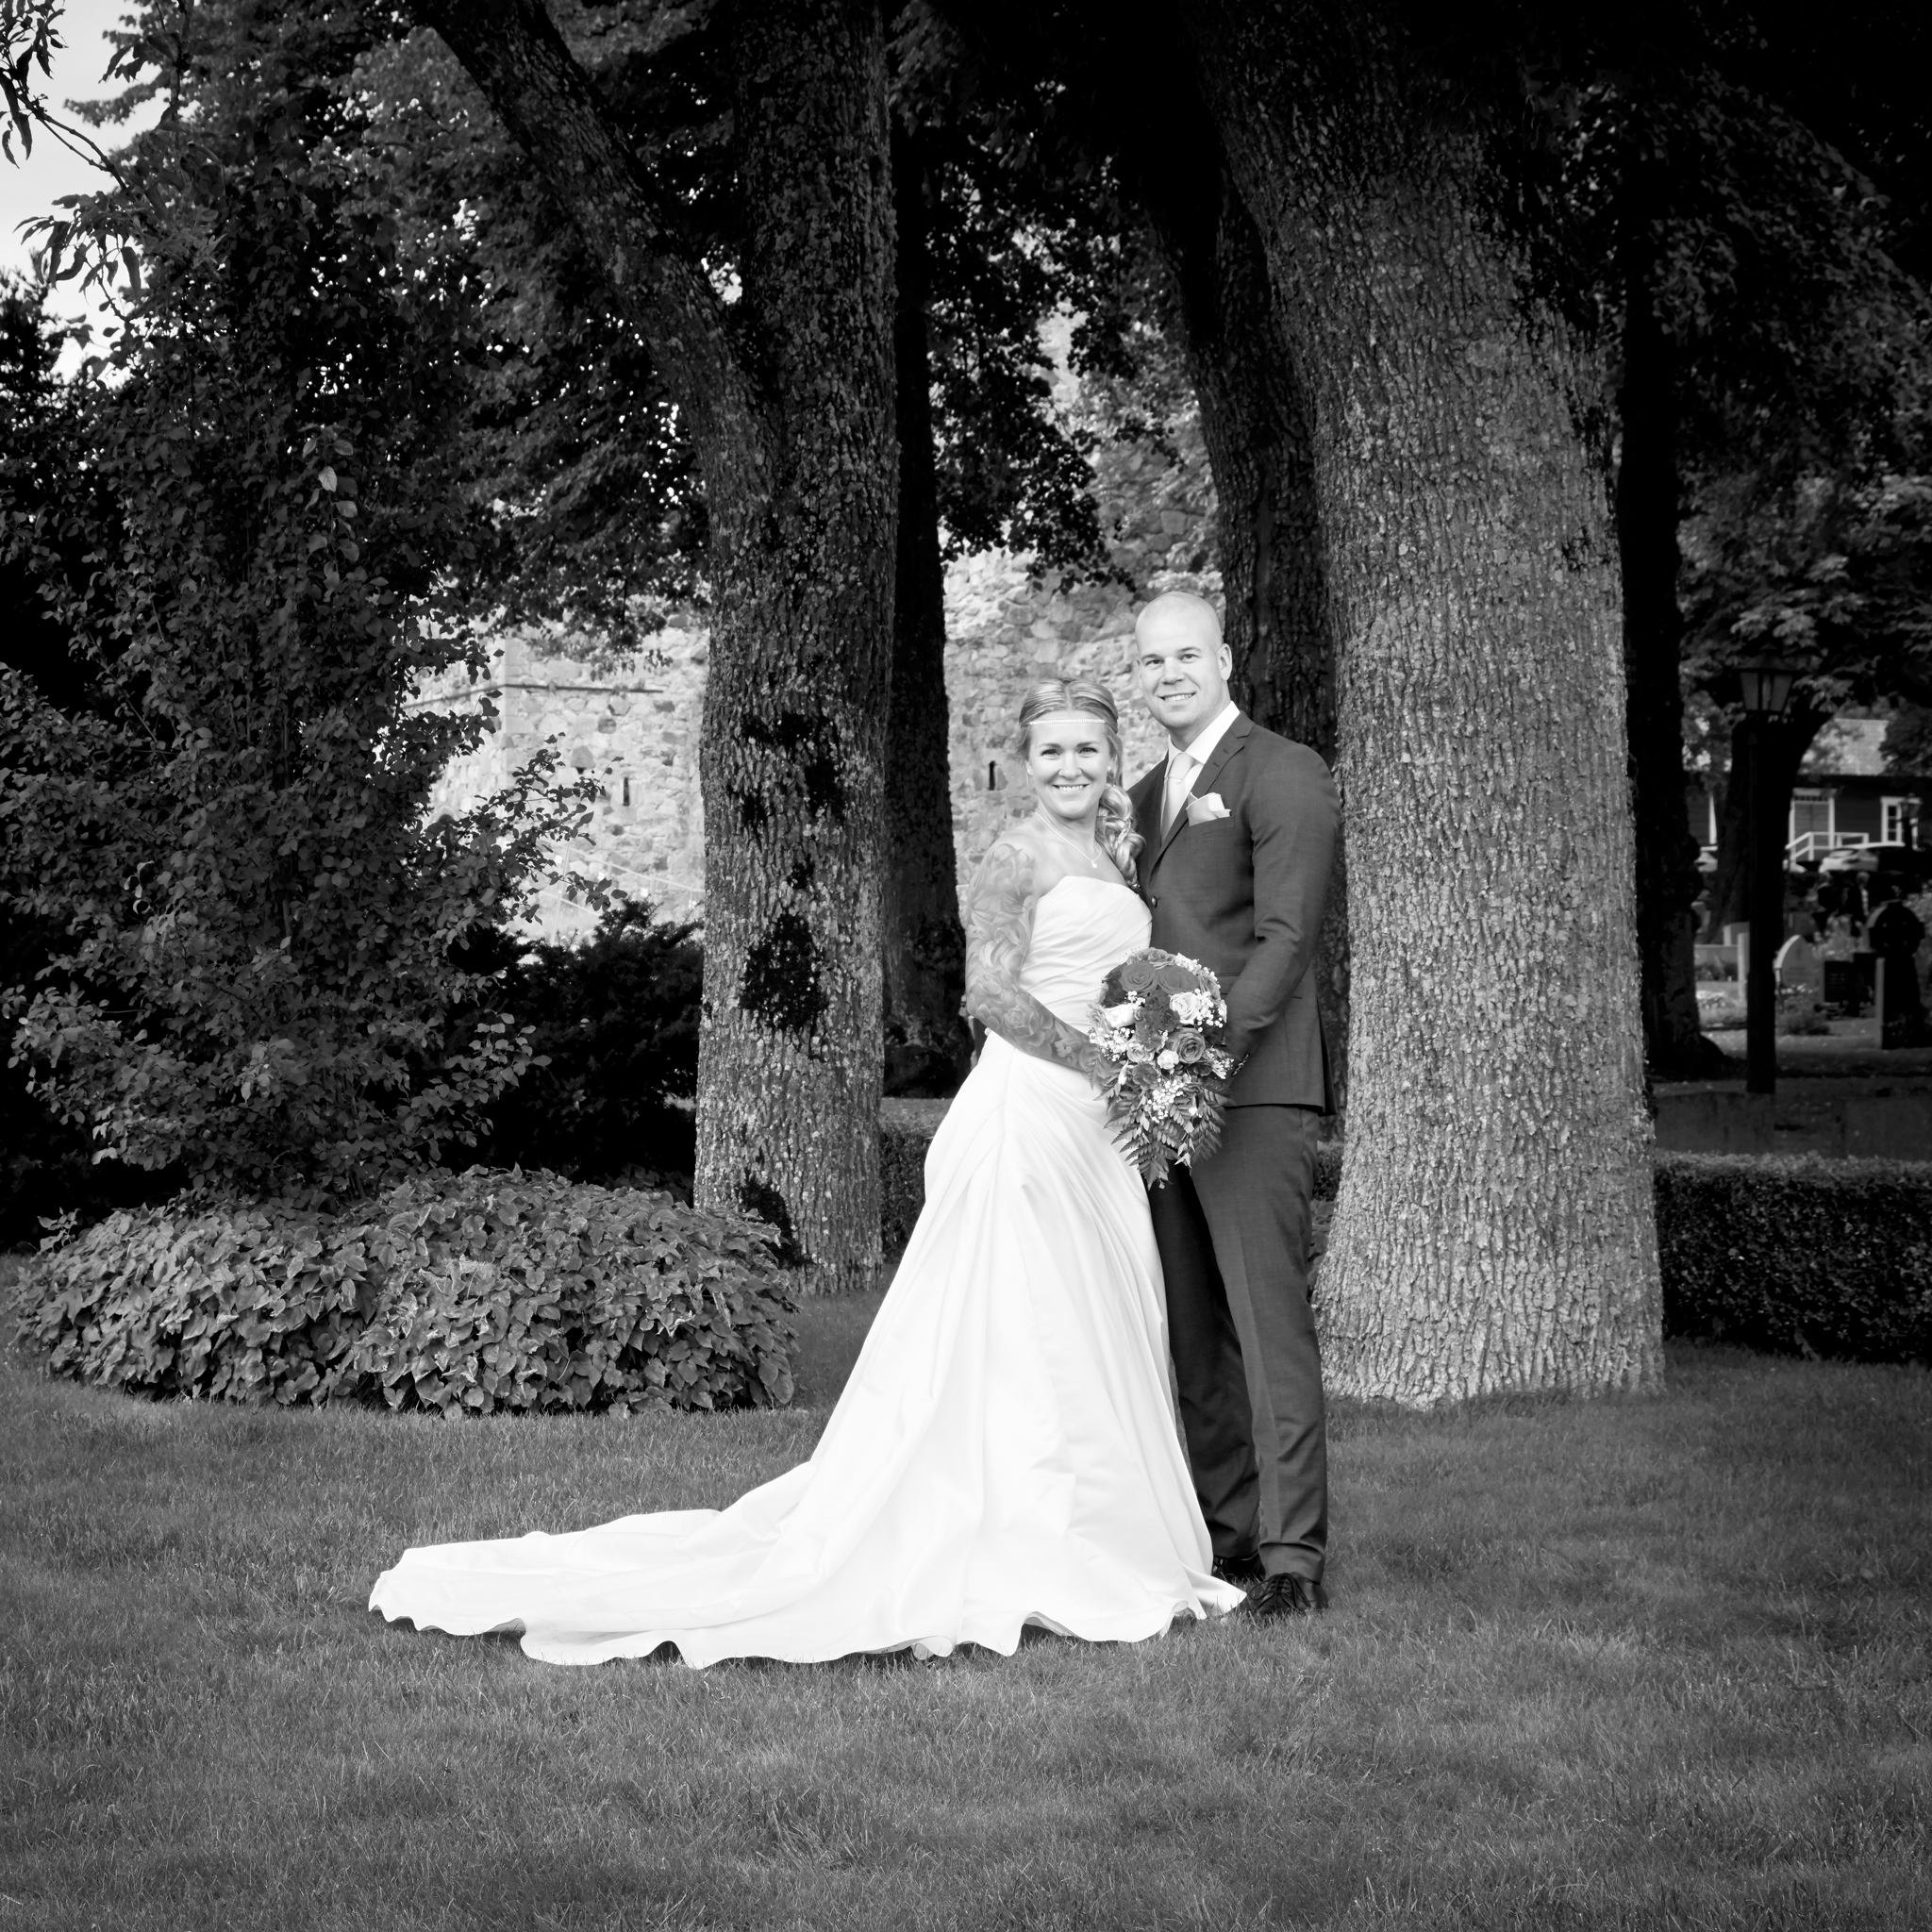 Commercial wedding photography in Sigtuna Sweden - brollop fotograf i Stockholm Sverige Ryan Laurita wedding photographer near Stockholm Sweden